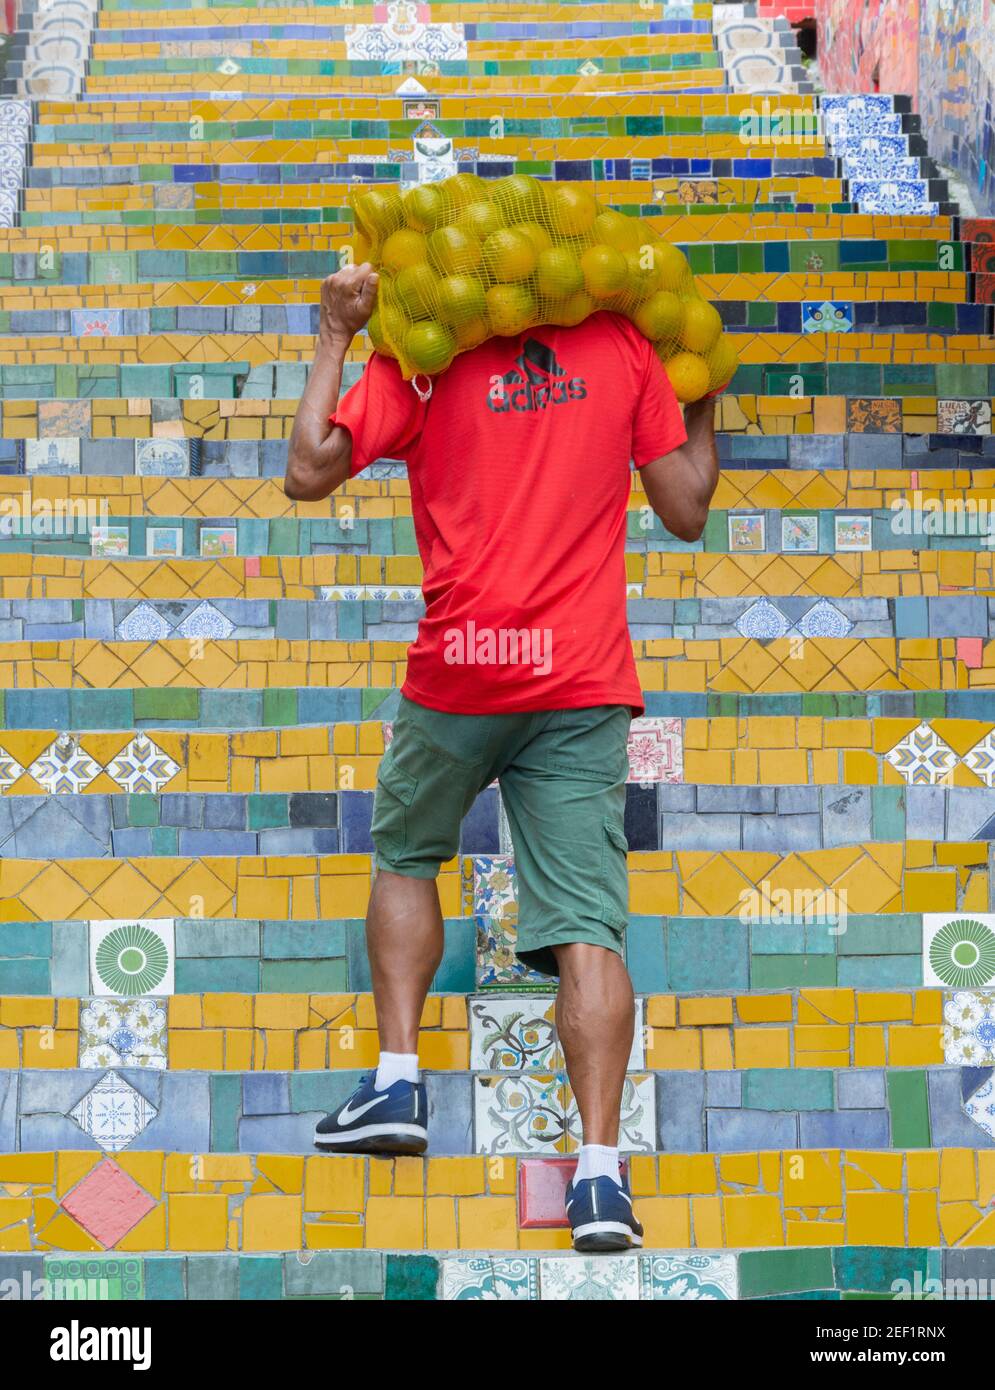 RIO DE JANEIRO, BRÉSIL - 3 JANVIER 2020 : un ouvrier porte un sac d'oranges en début de matinée sur la célèbre Escadaria Selaron (escalier de Sélaron) Banque D'Images